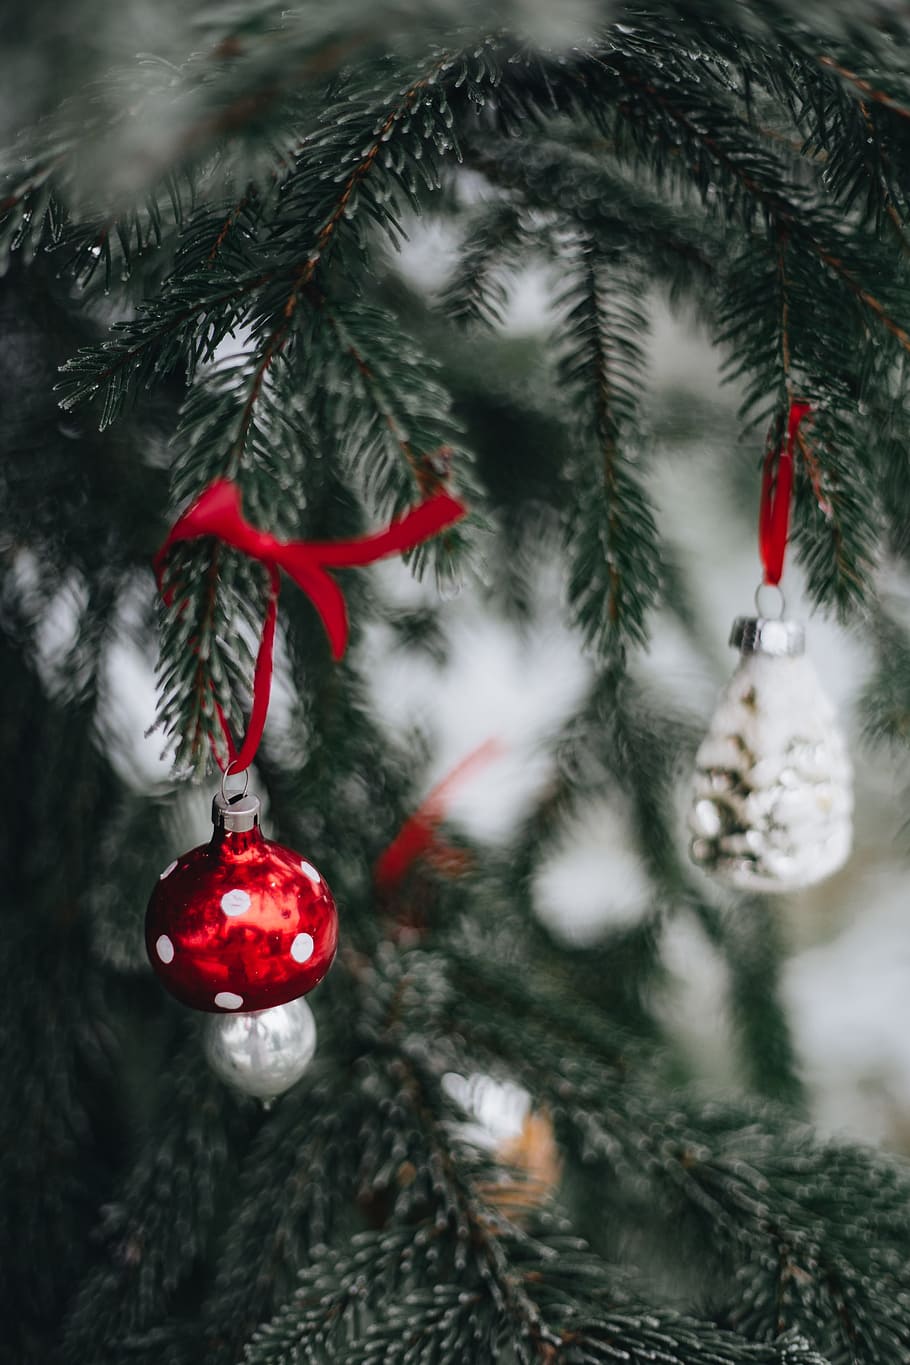 anticuado, adornos para árboles de navidad, vintage, antiguo, retro, árbol, invierno, navidad, bolas de navidad, al aire libre